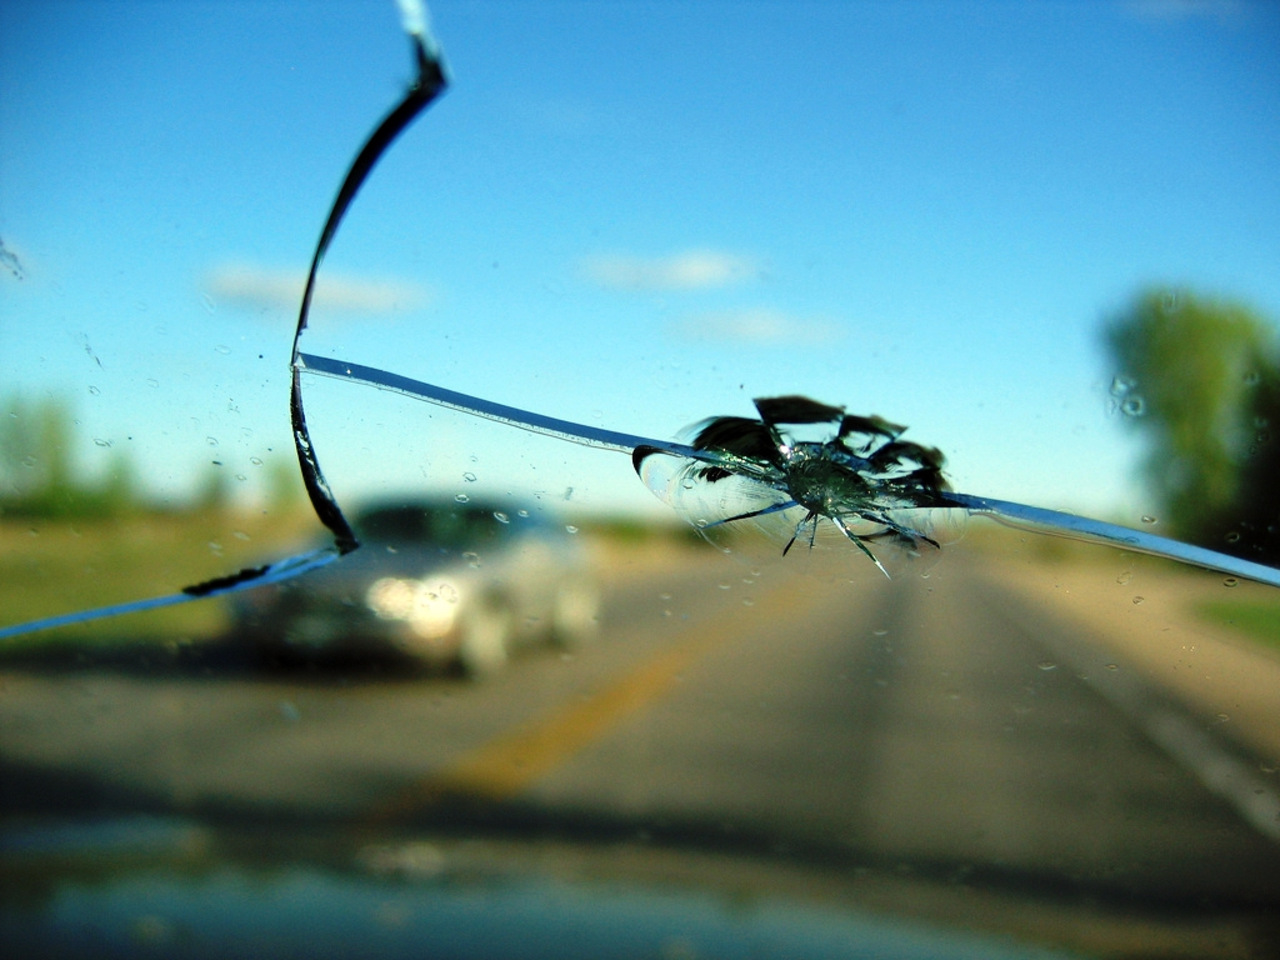 Как быстро убрать трещину на лобовом стекле автомобиля